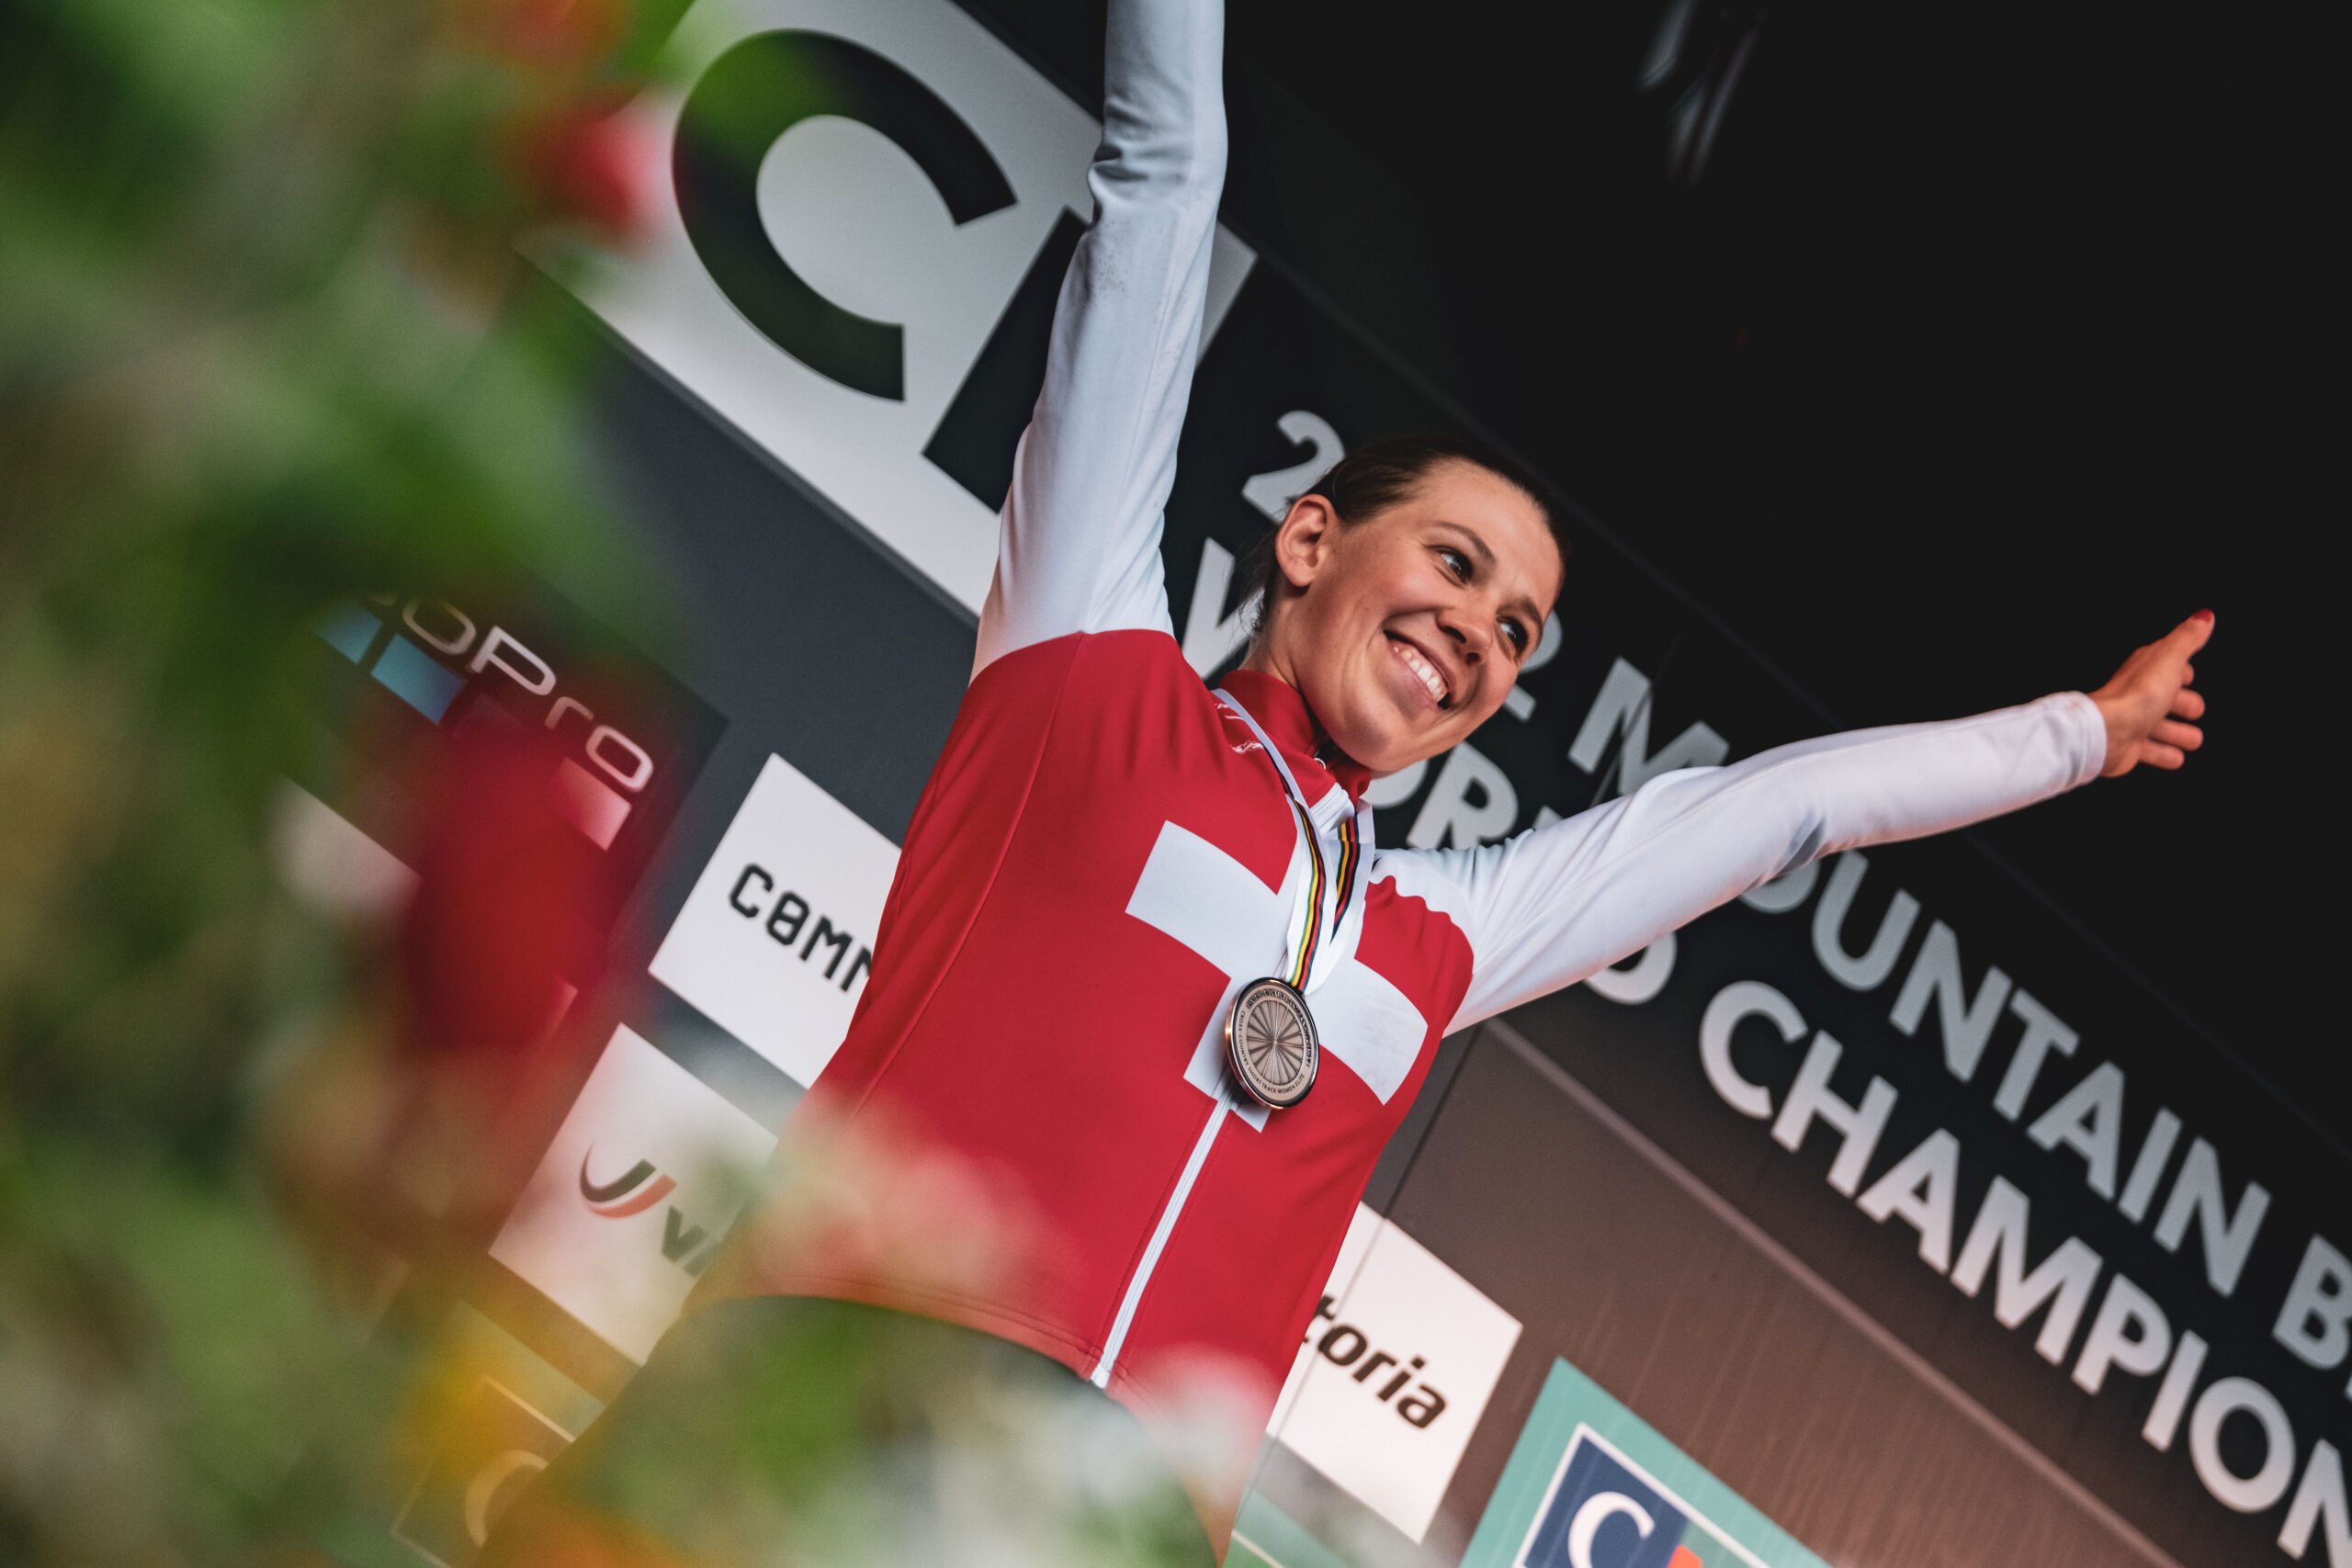 Sensational World Championship Silver For Alessandra Keller